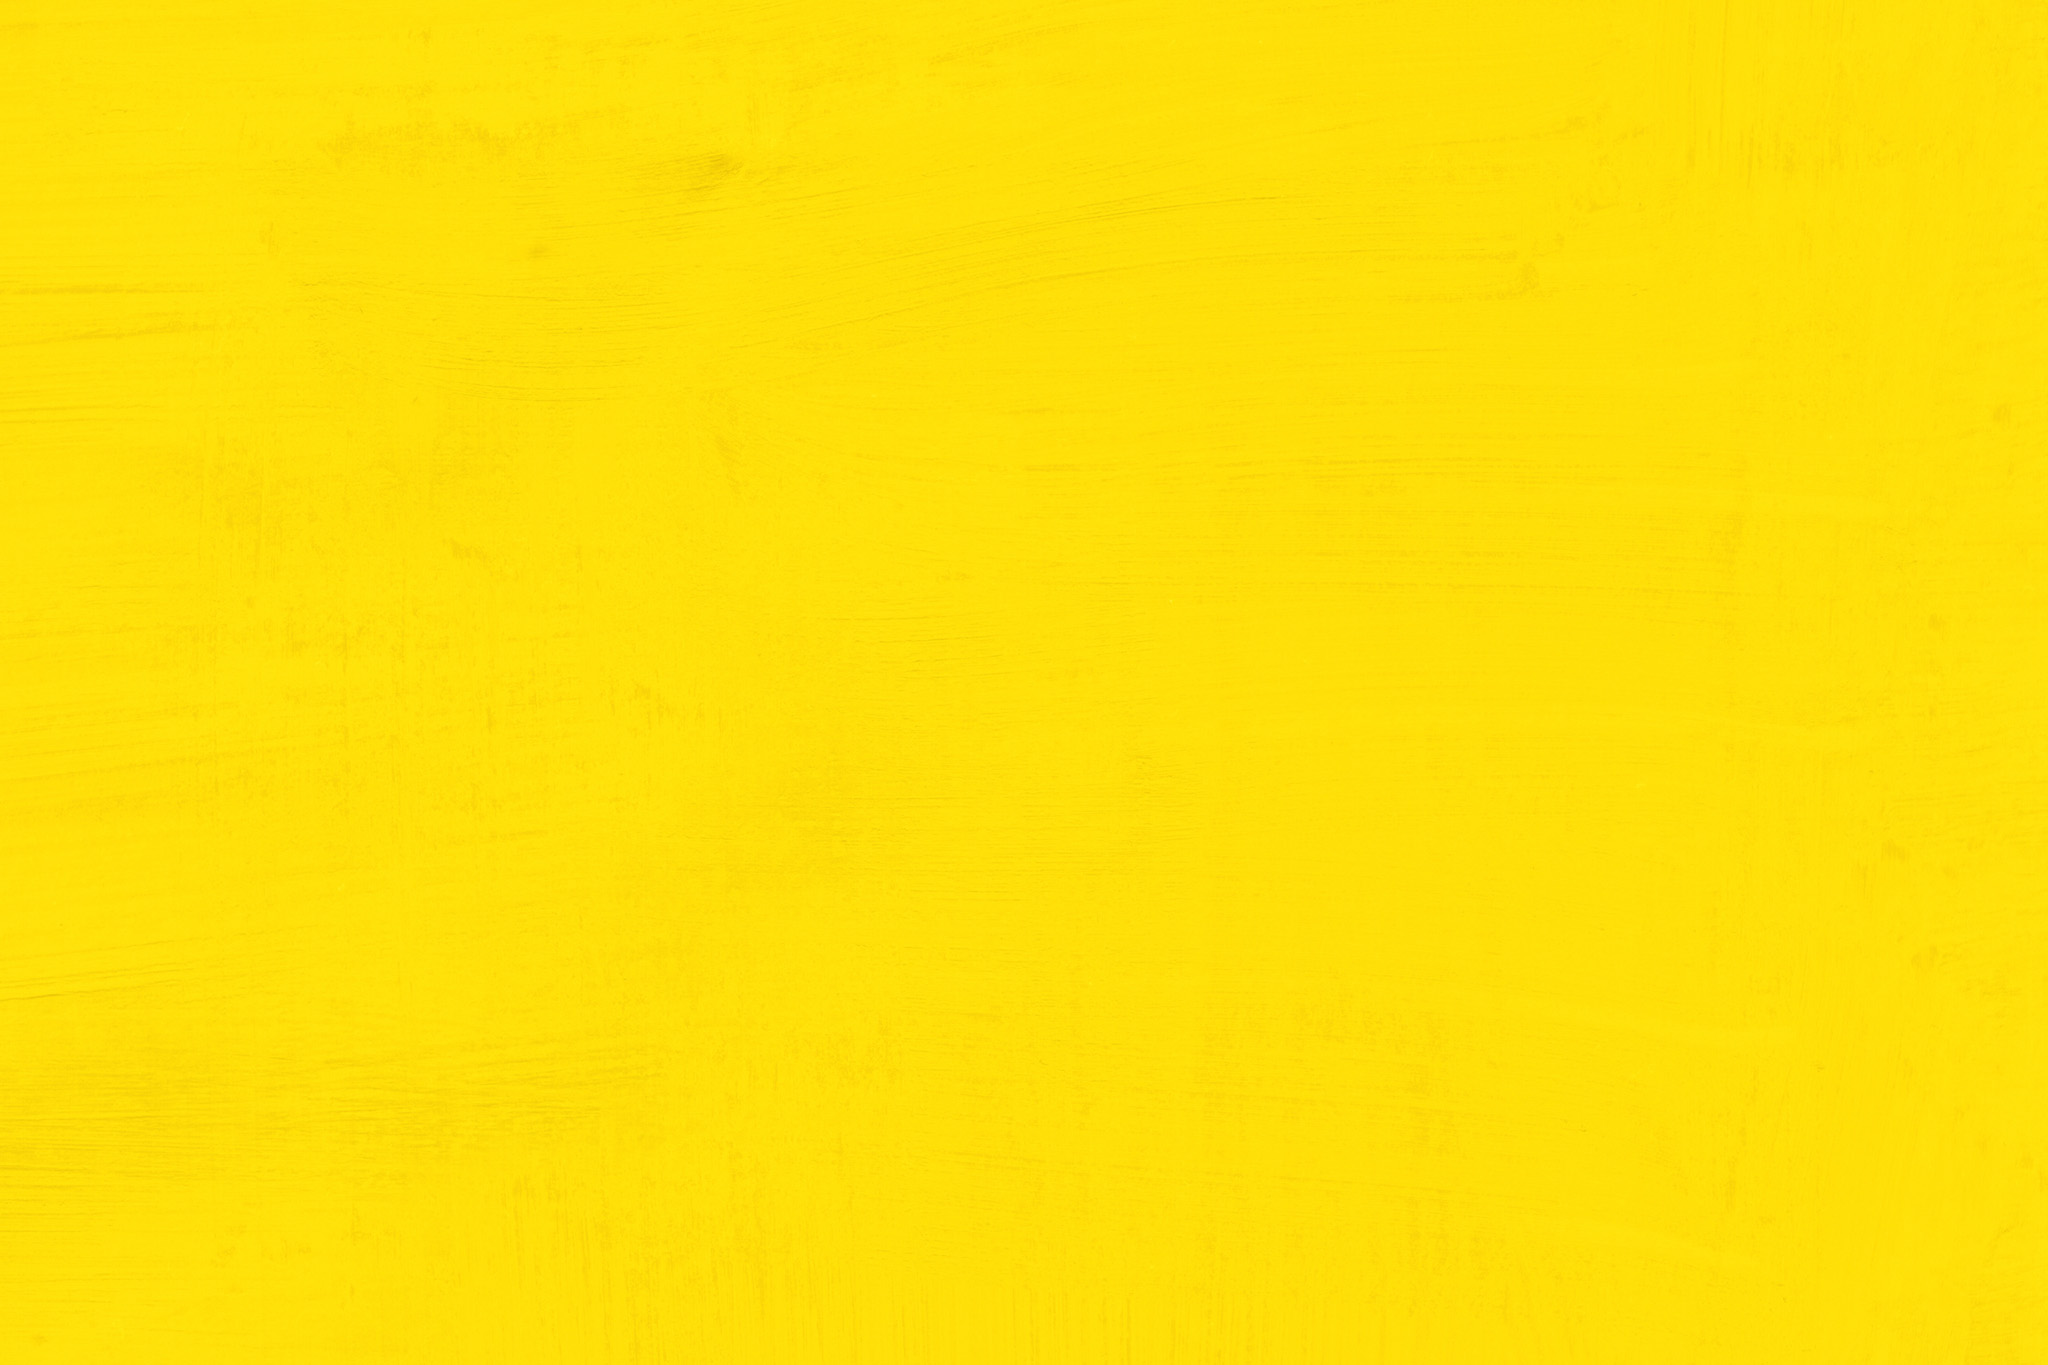 無地の黄色のかっこいい壁紙 の画像素材を無料ダウンロード 1 フリー素材 Beiz Images